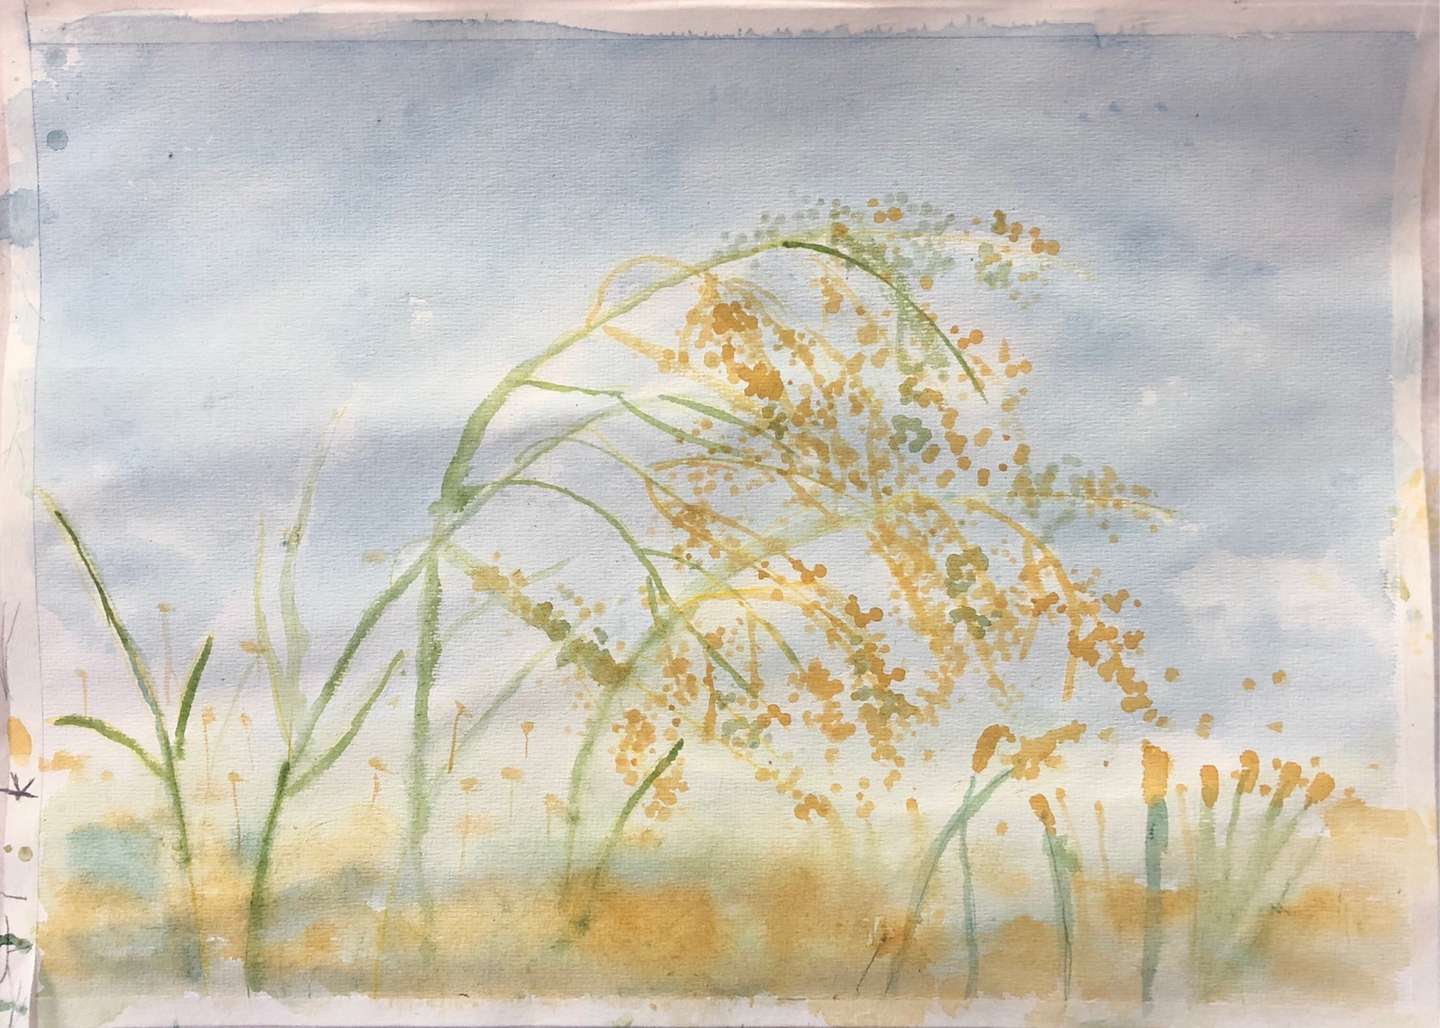 学生水彩作品 天空下的稻穗画法解读 知乎